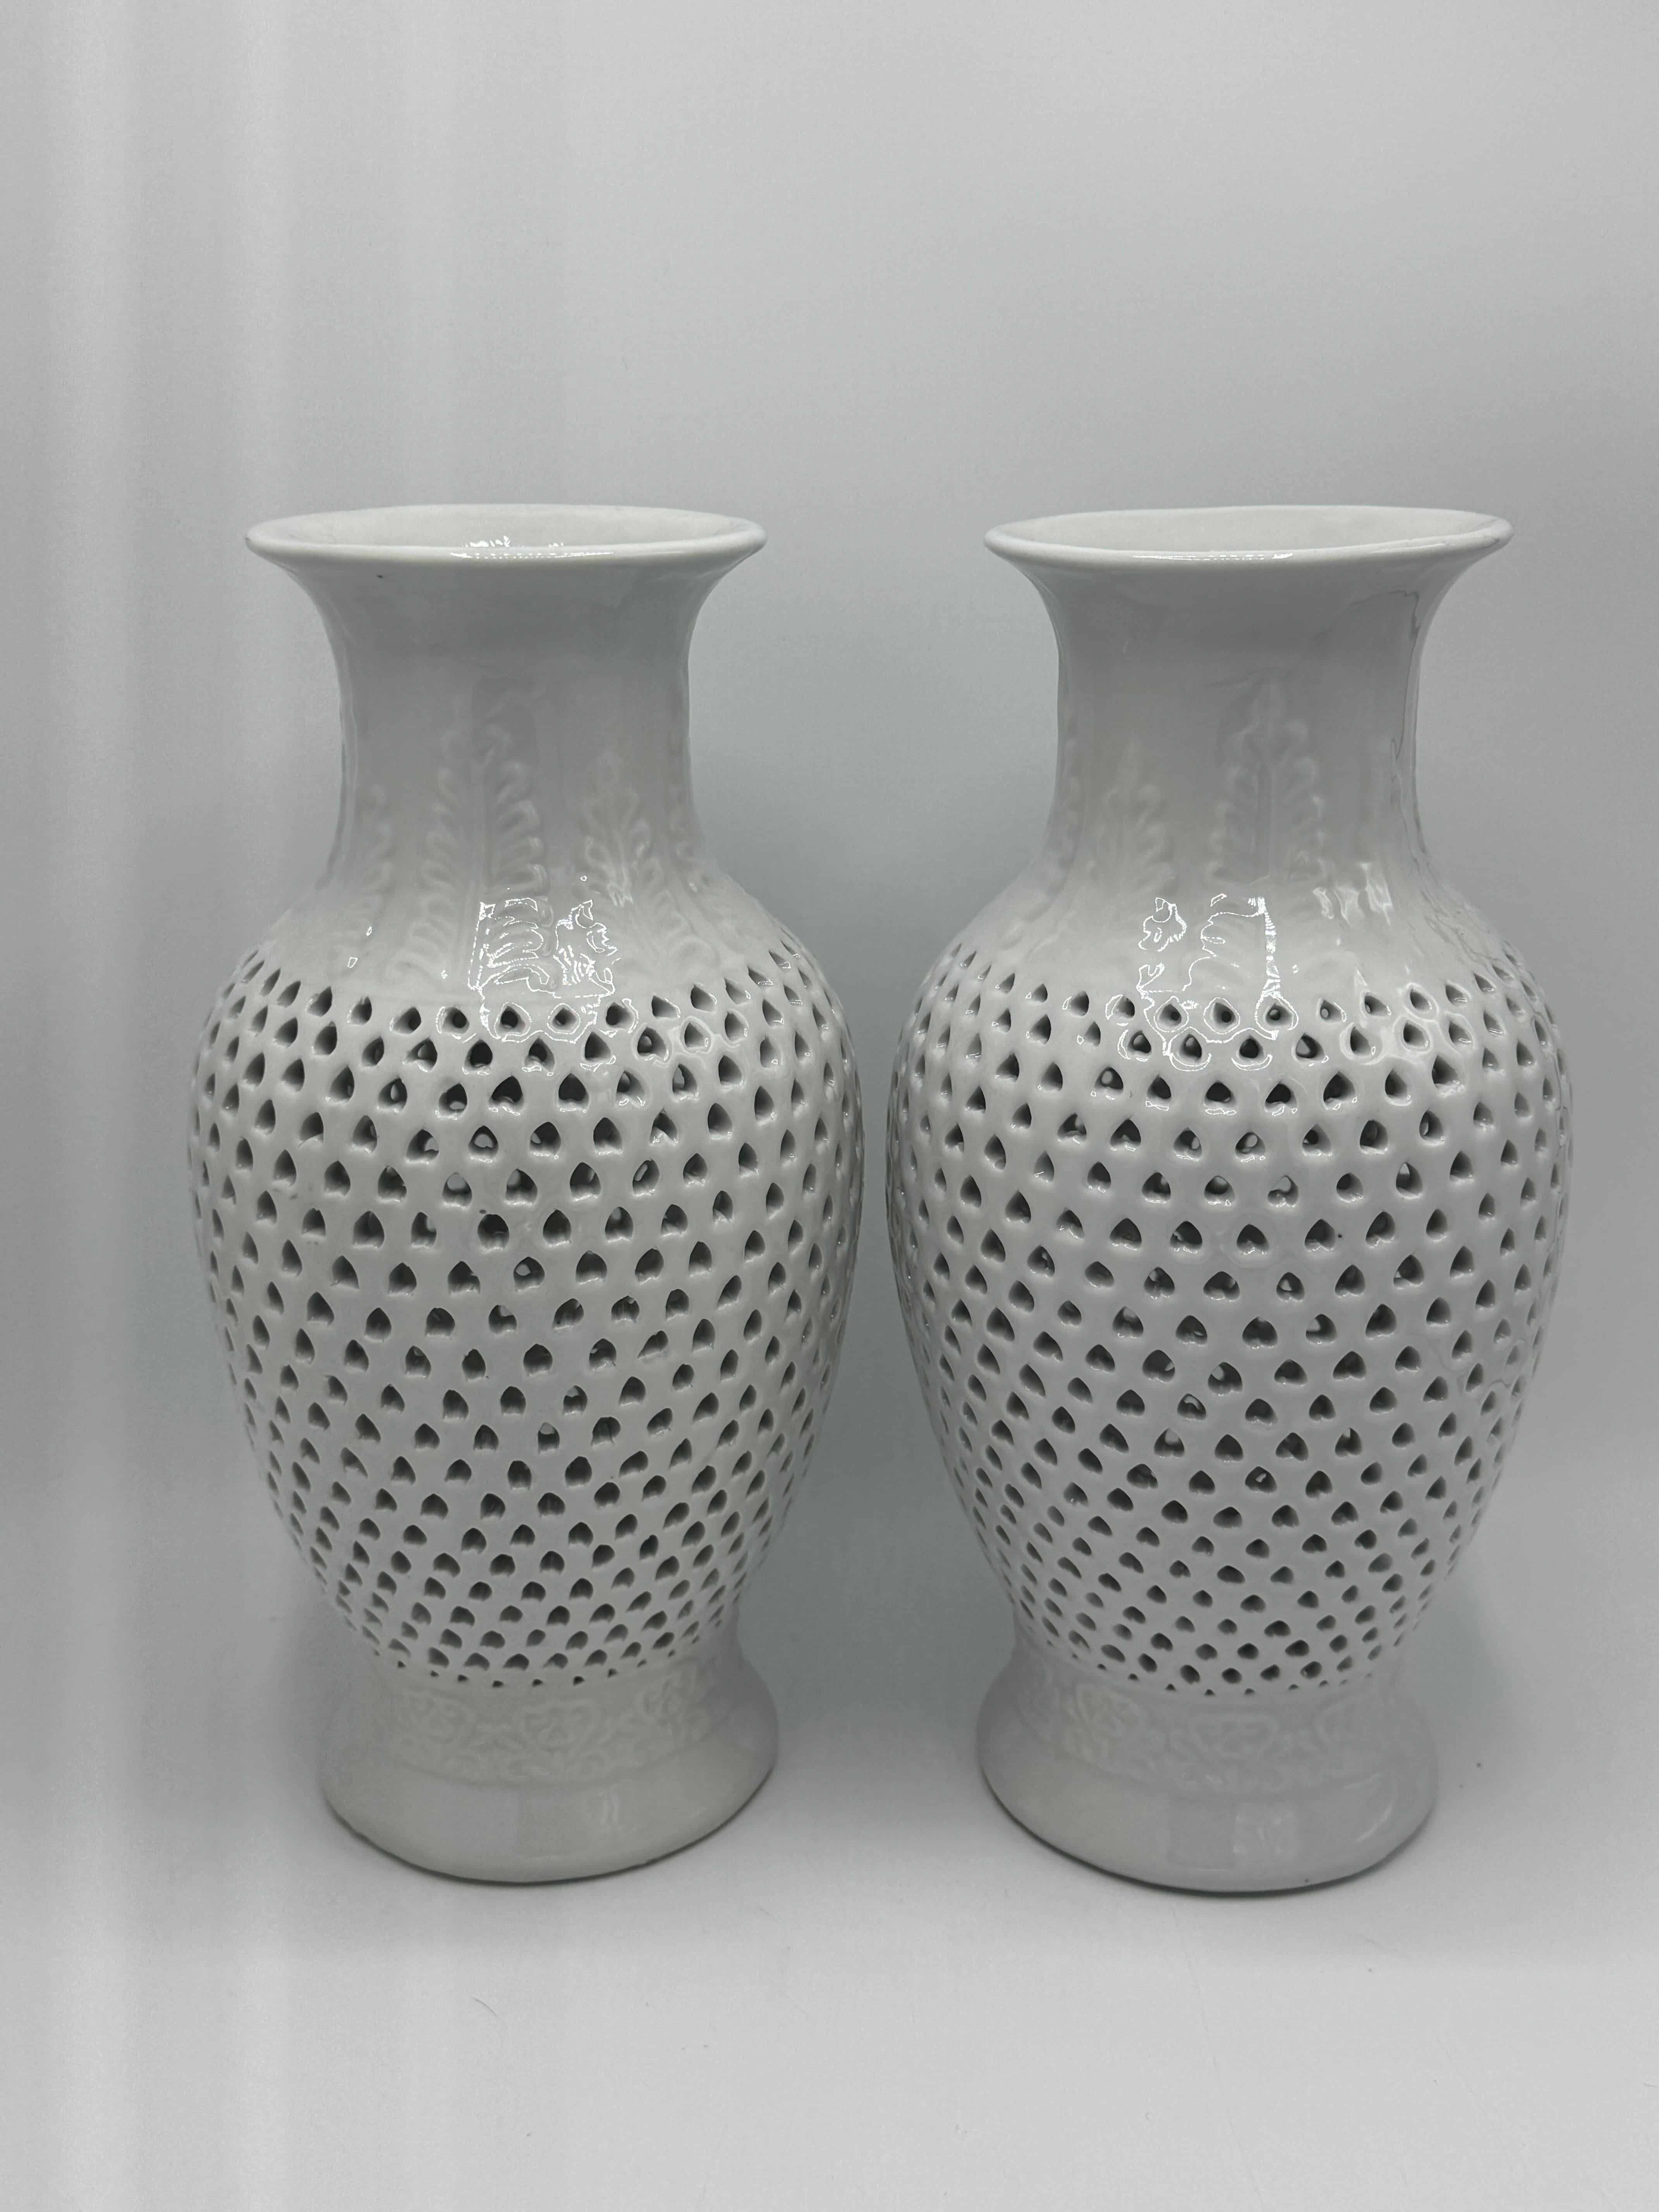 Nous vous proposons une fabuleuse paire d'urnes en porcelaine percée Blanc de Chine des années 1960. La paire présente un motif percé au centre du corps, avec un motif de feuilles en relief le long du col et de la base. Sur la face inférieure, il y